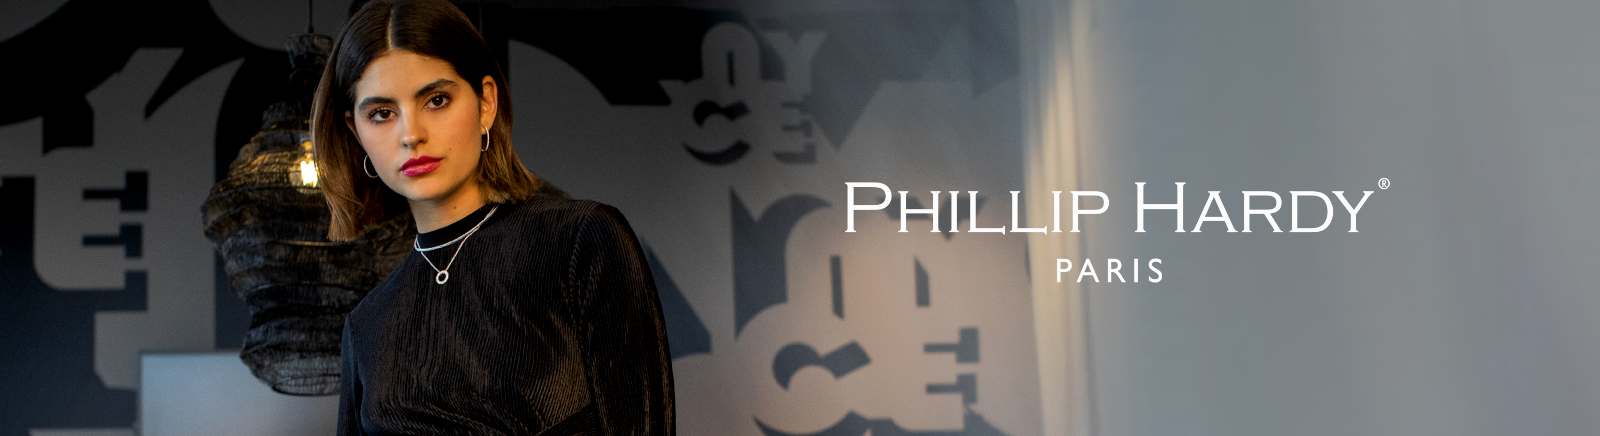 Prange: Phillip Hardy Espadrilles für Damen kaufen online shoppen